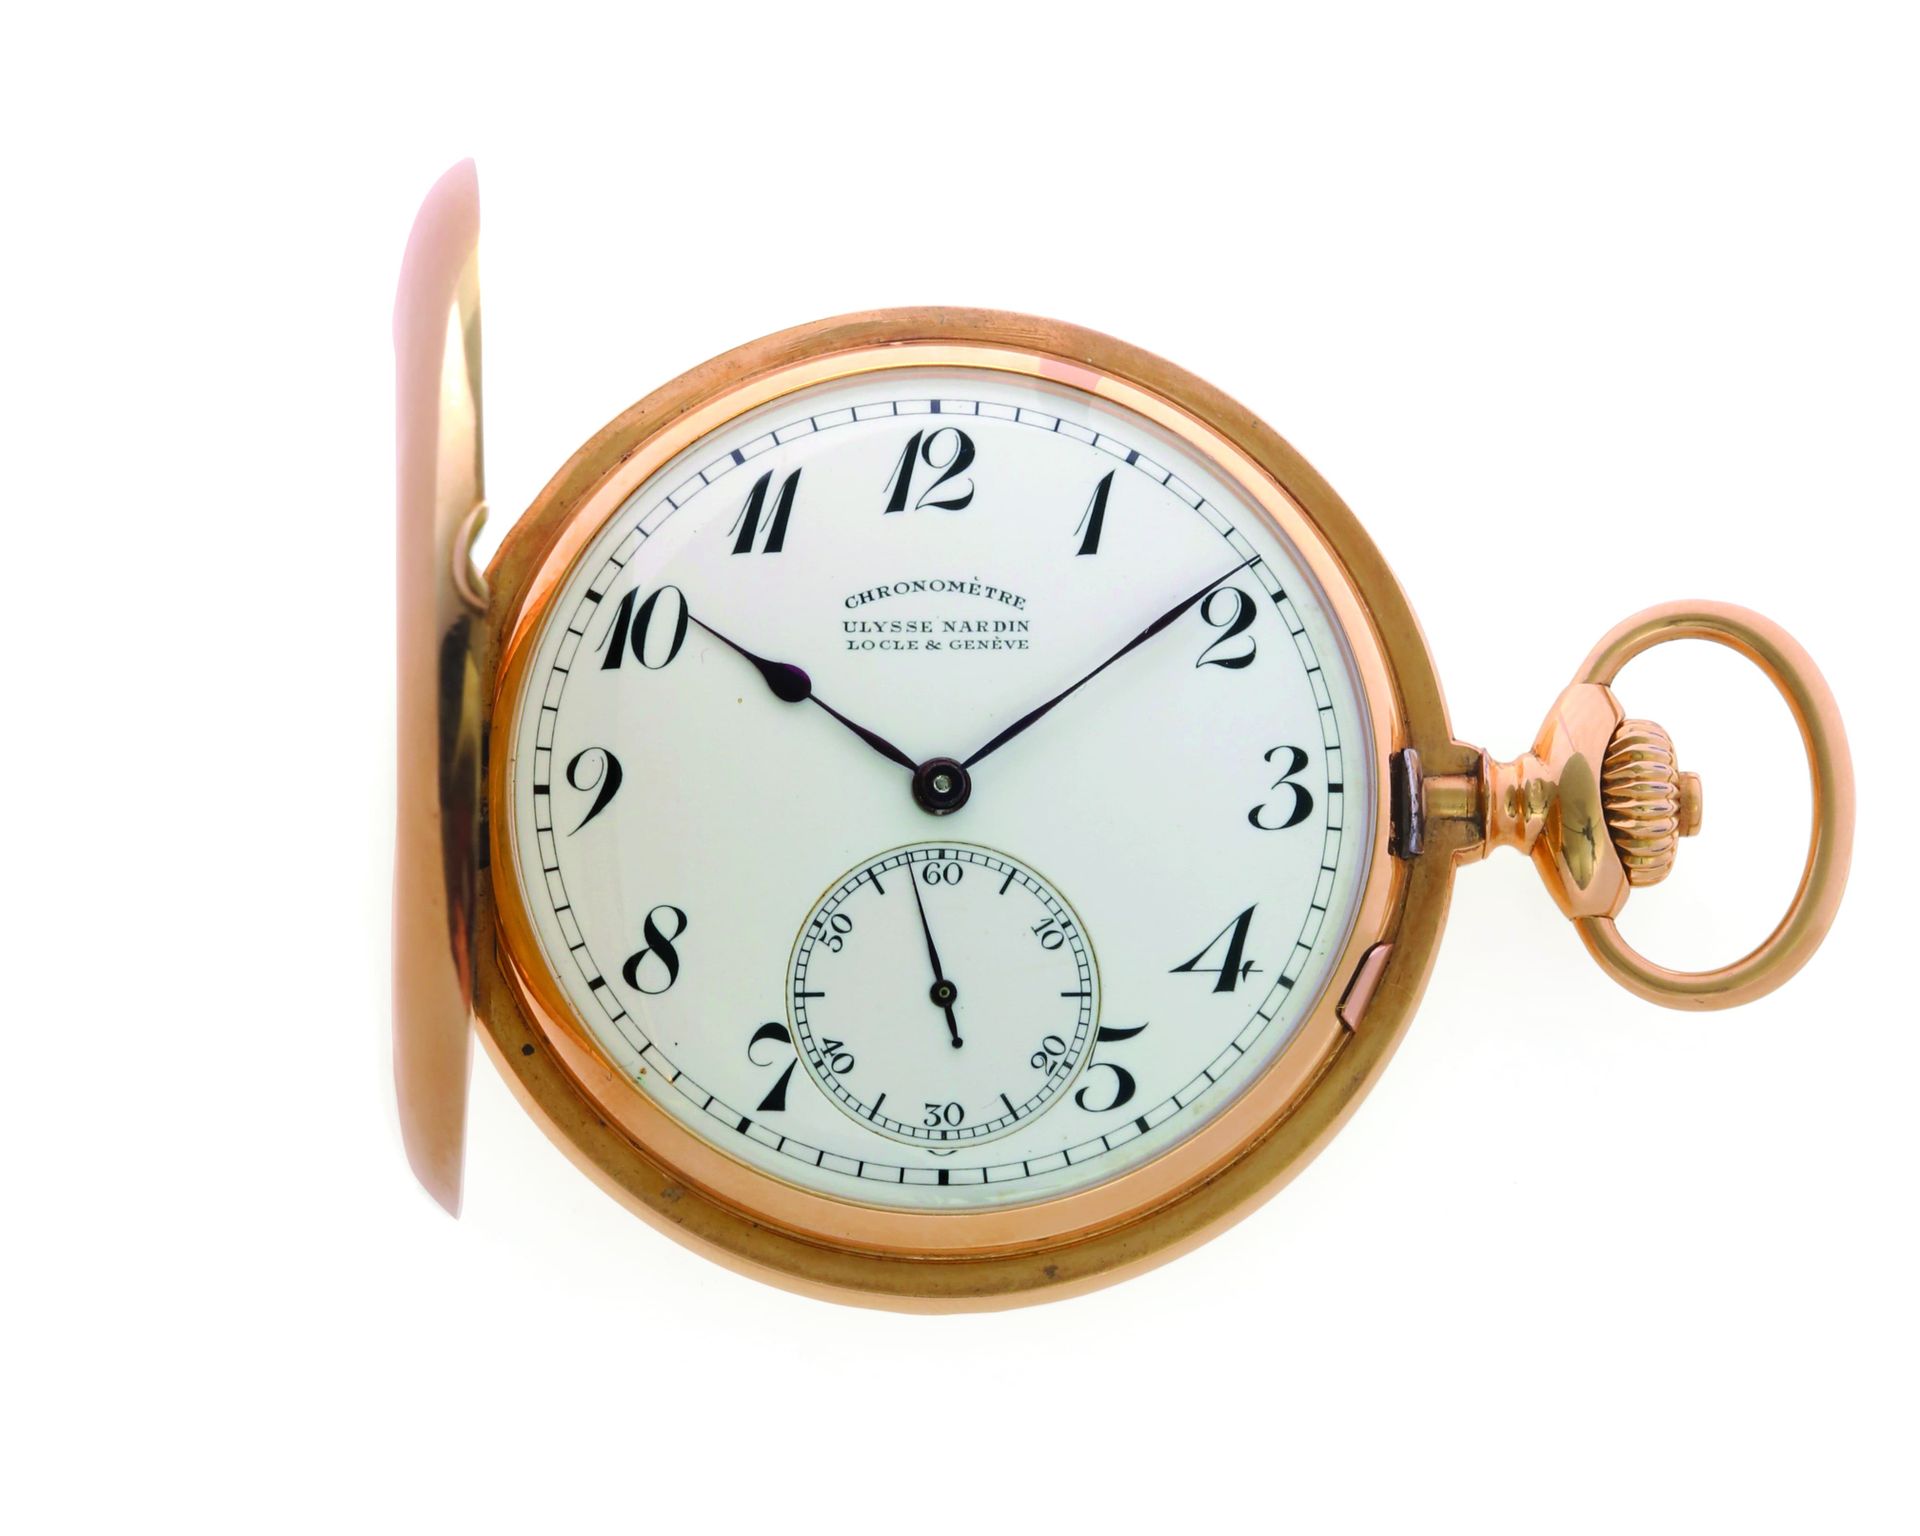 ULYSSE NARDIN - LE LOCLE & GENÈVE Savonnette Chronometer
Außergewöhnliche und hi&hellip;